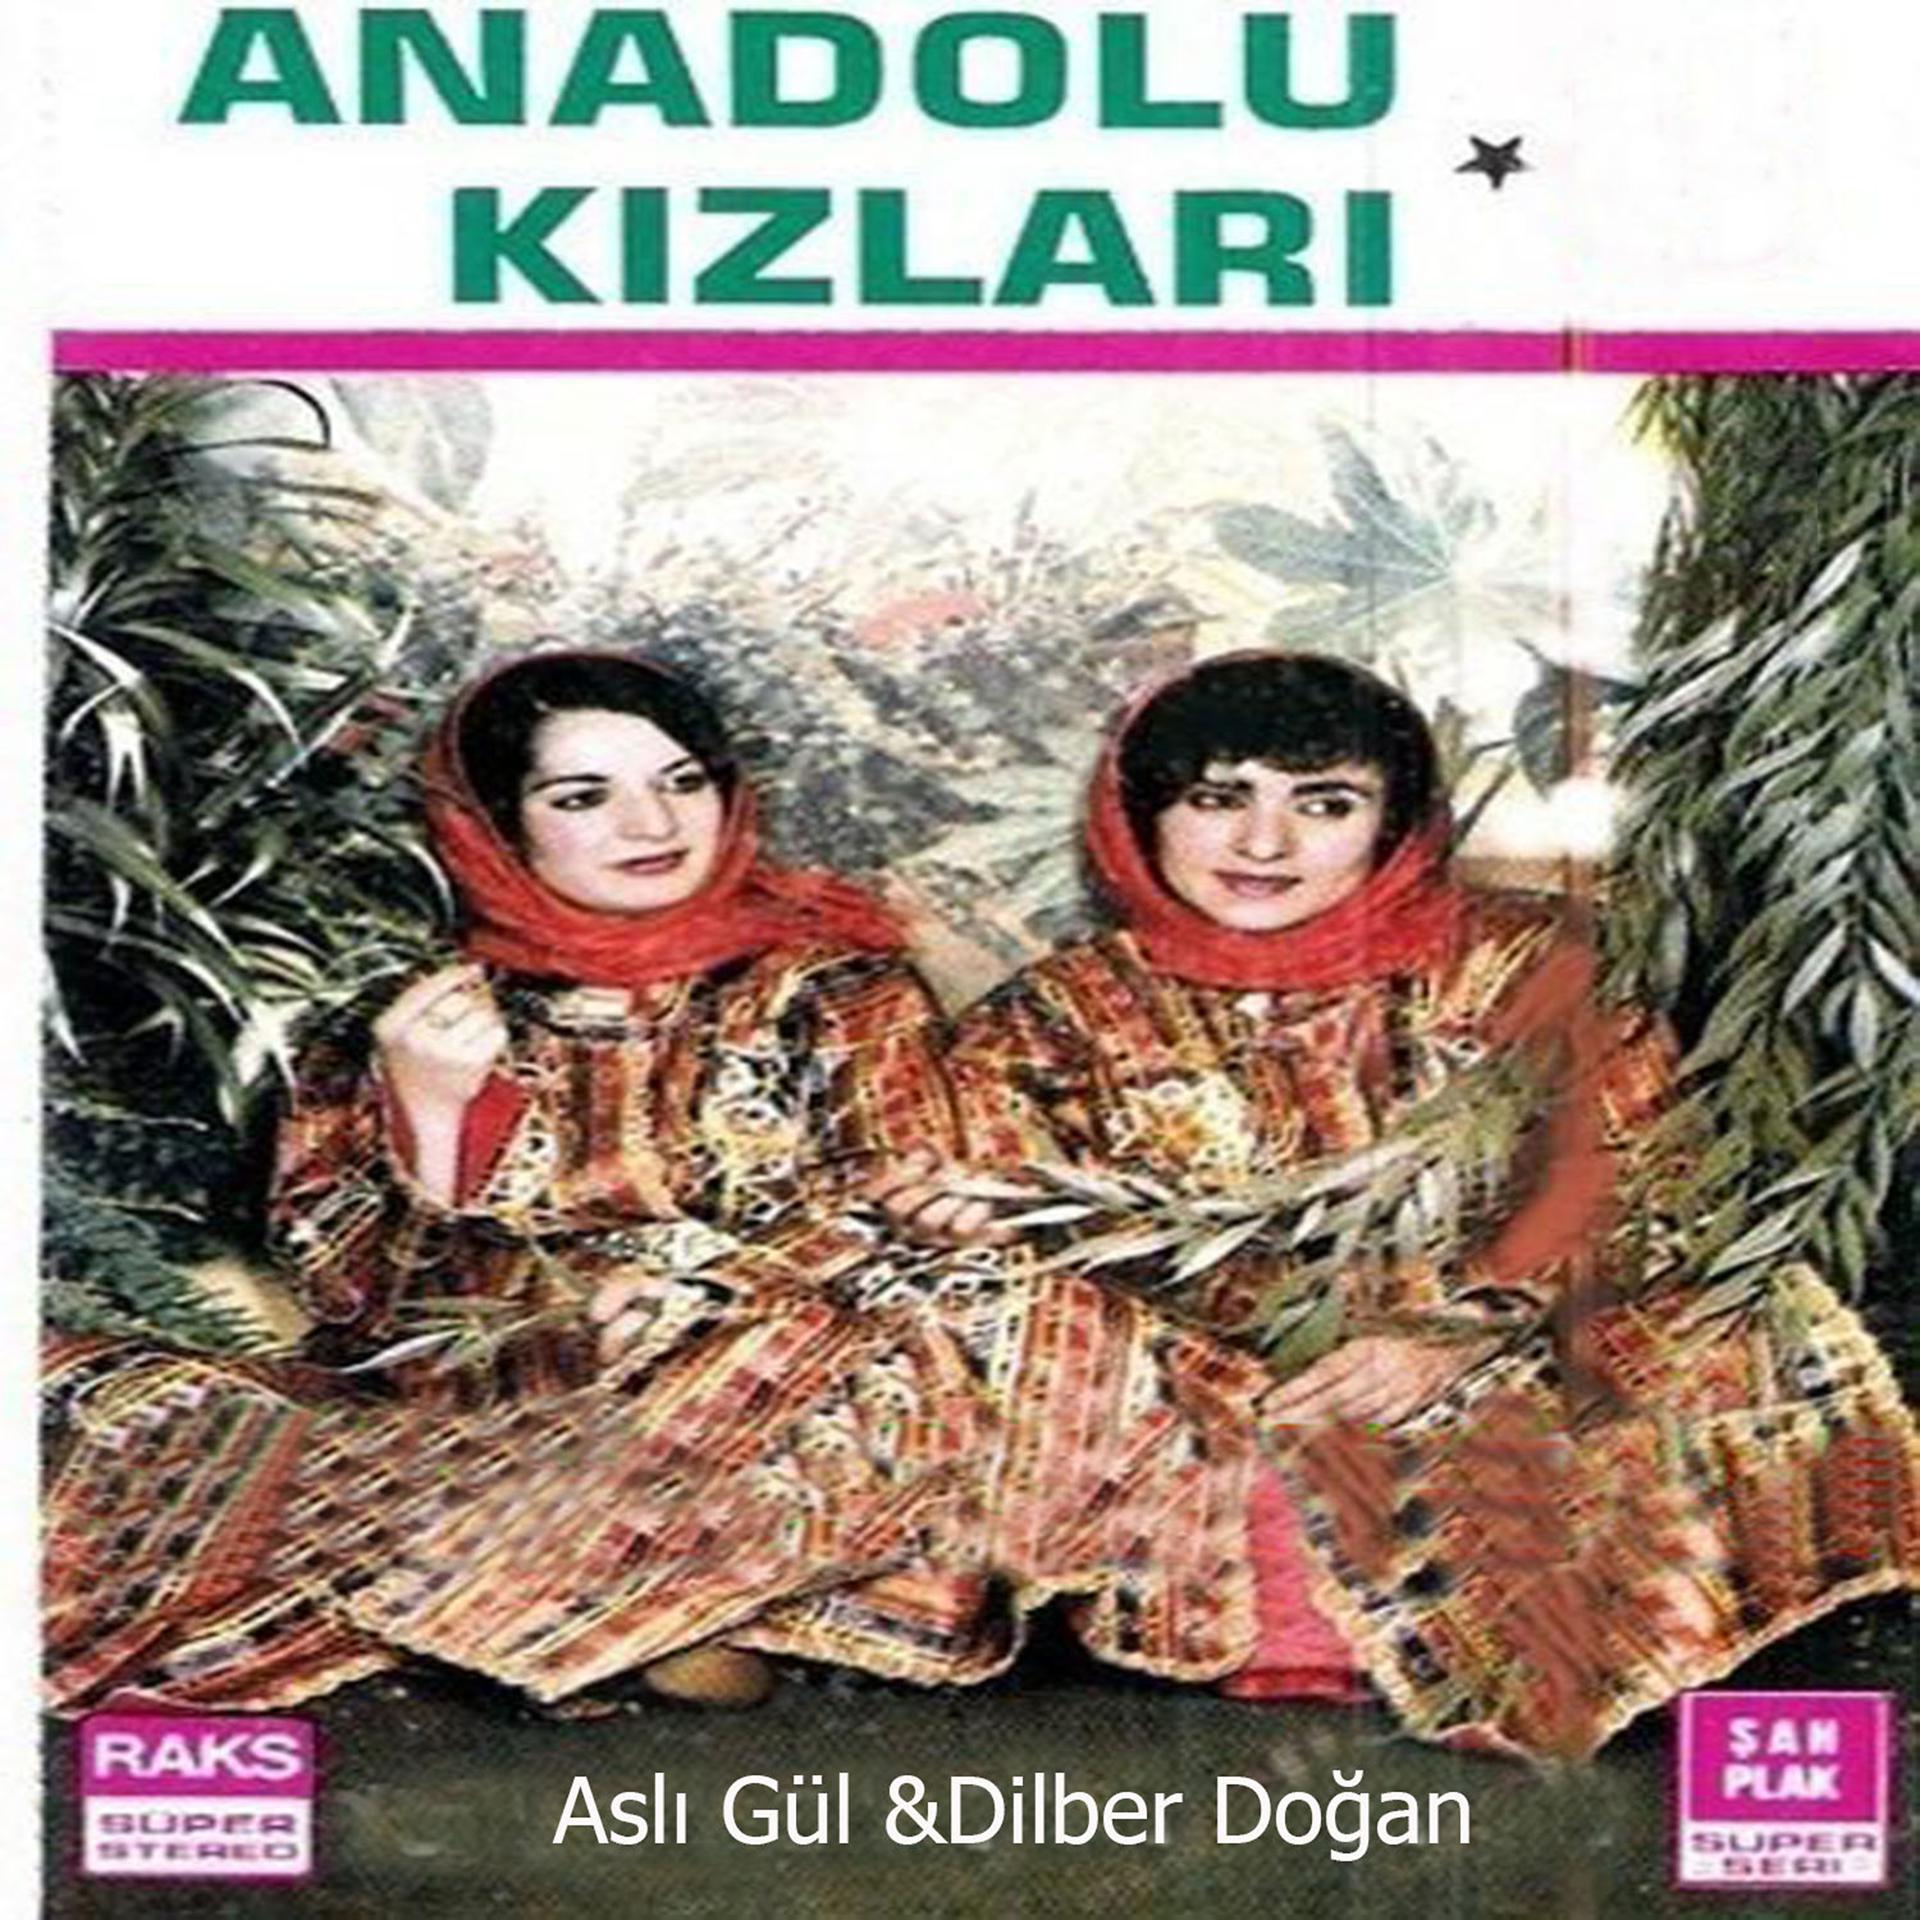 Постер альбома Anadolu Kızları